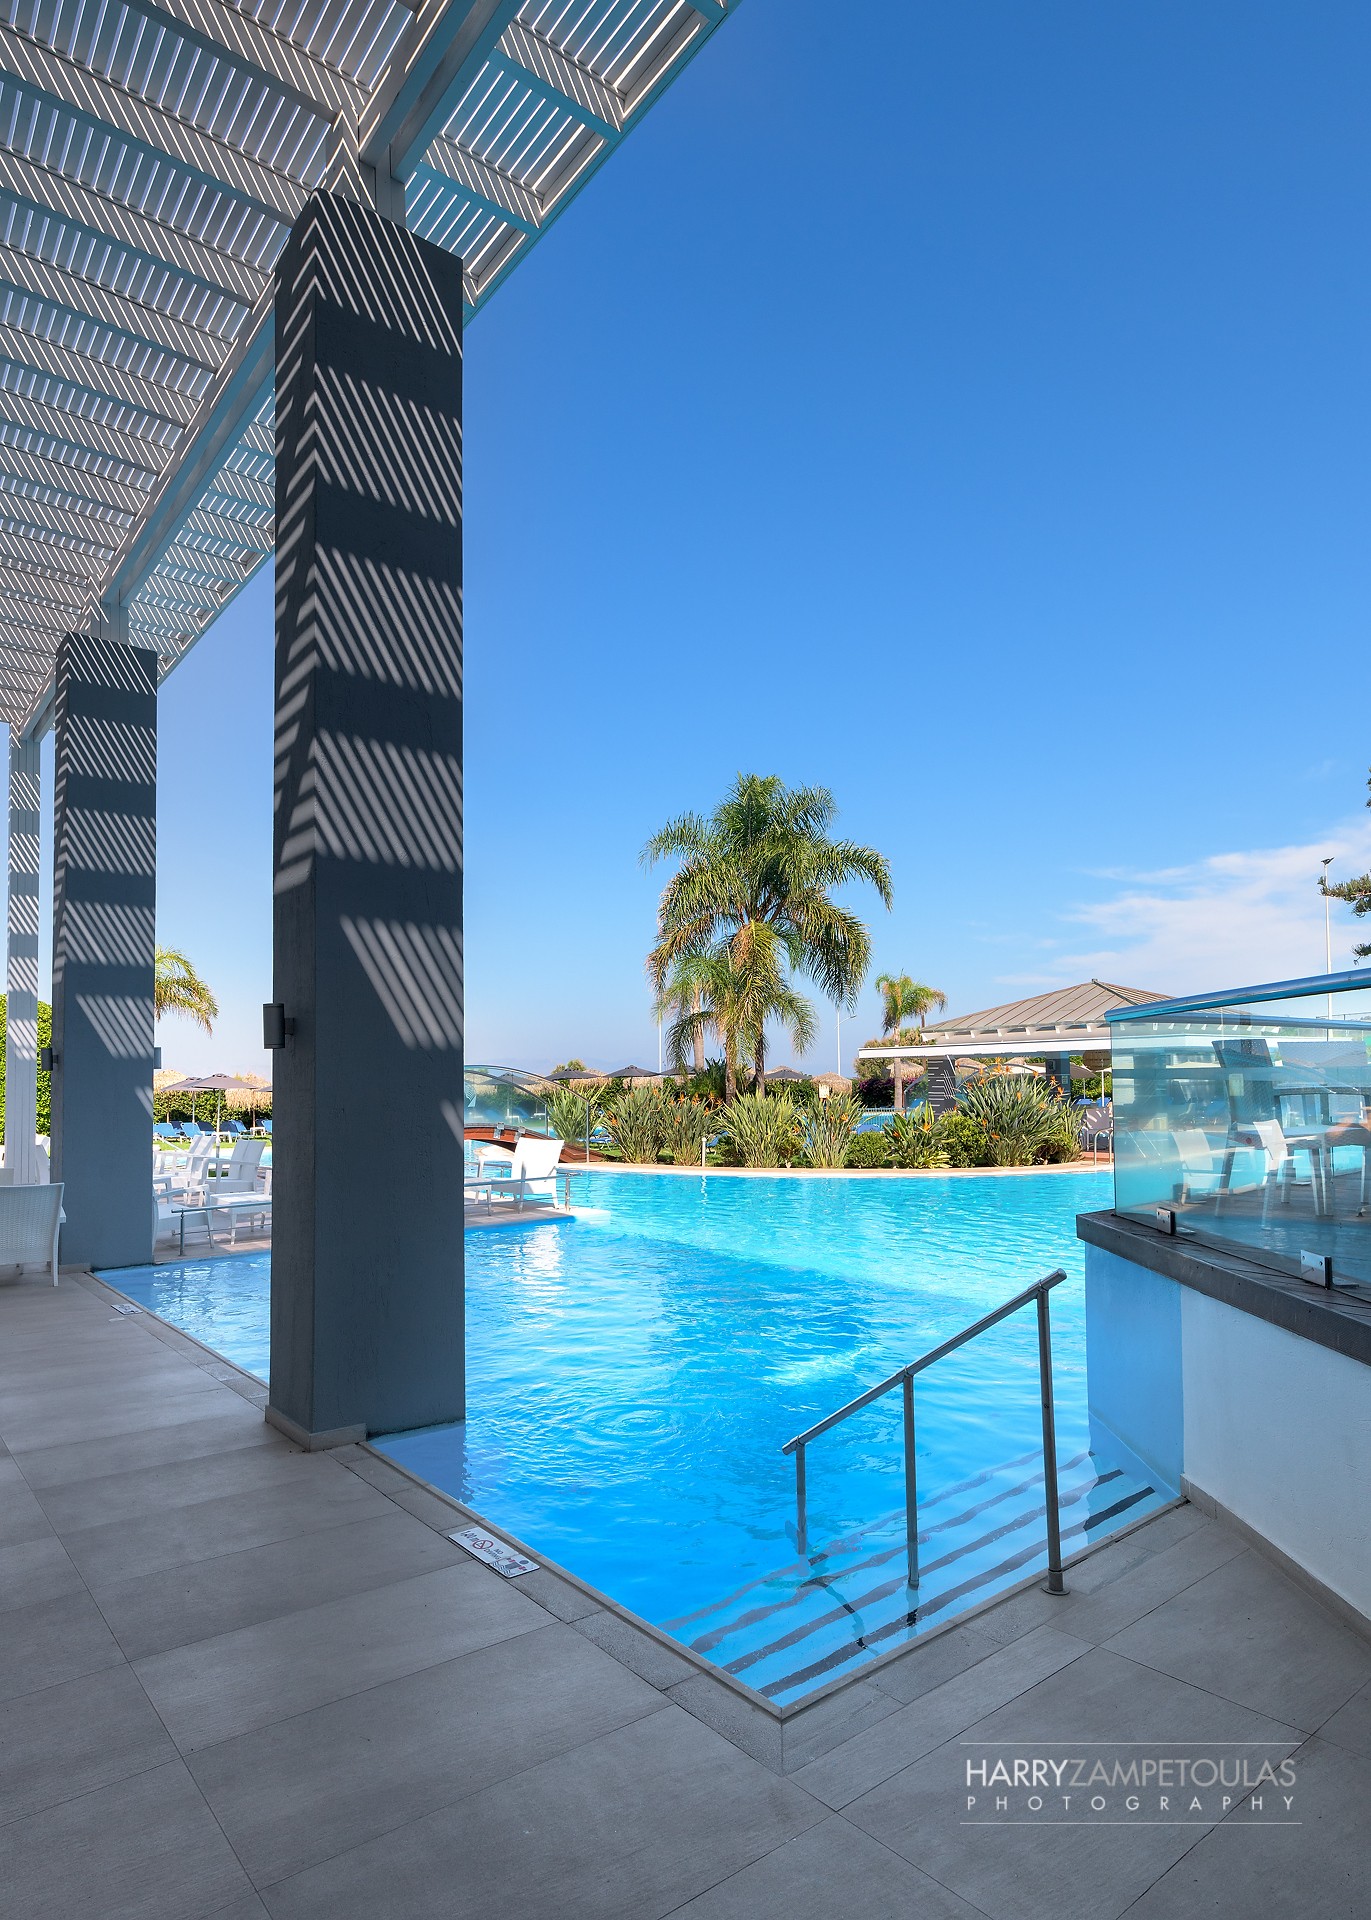 Oceanis-Hotel-Rhodes-Harry-Zampetoulas-Photography-19 Oceanis Hotel Rhodes - Φωτογράφιση Ξενοδοχείου Χάρης Ζαμπετούλας 